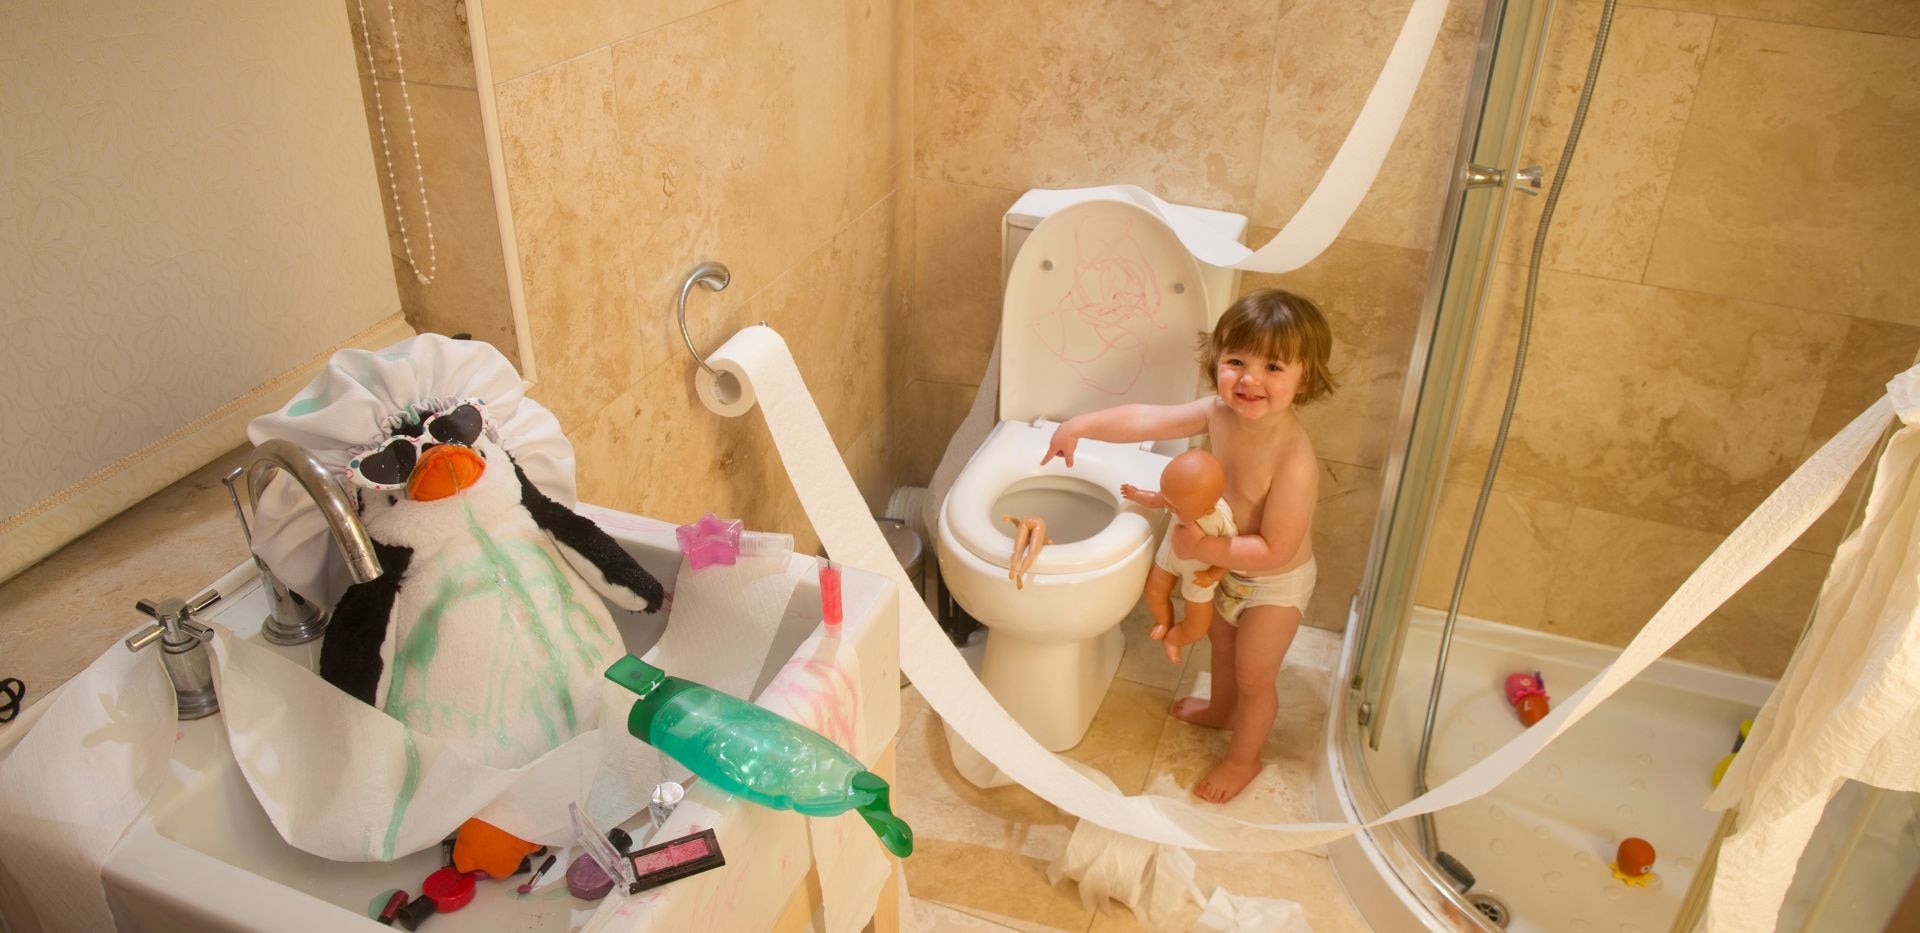 Malé dítě hrající si v koupelně s toaletním papírem.